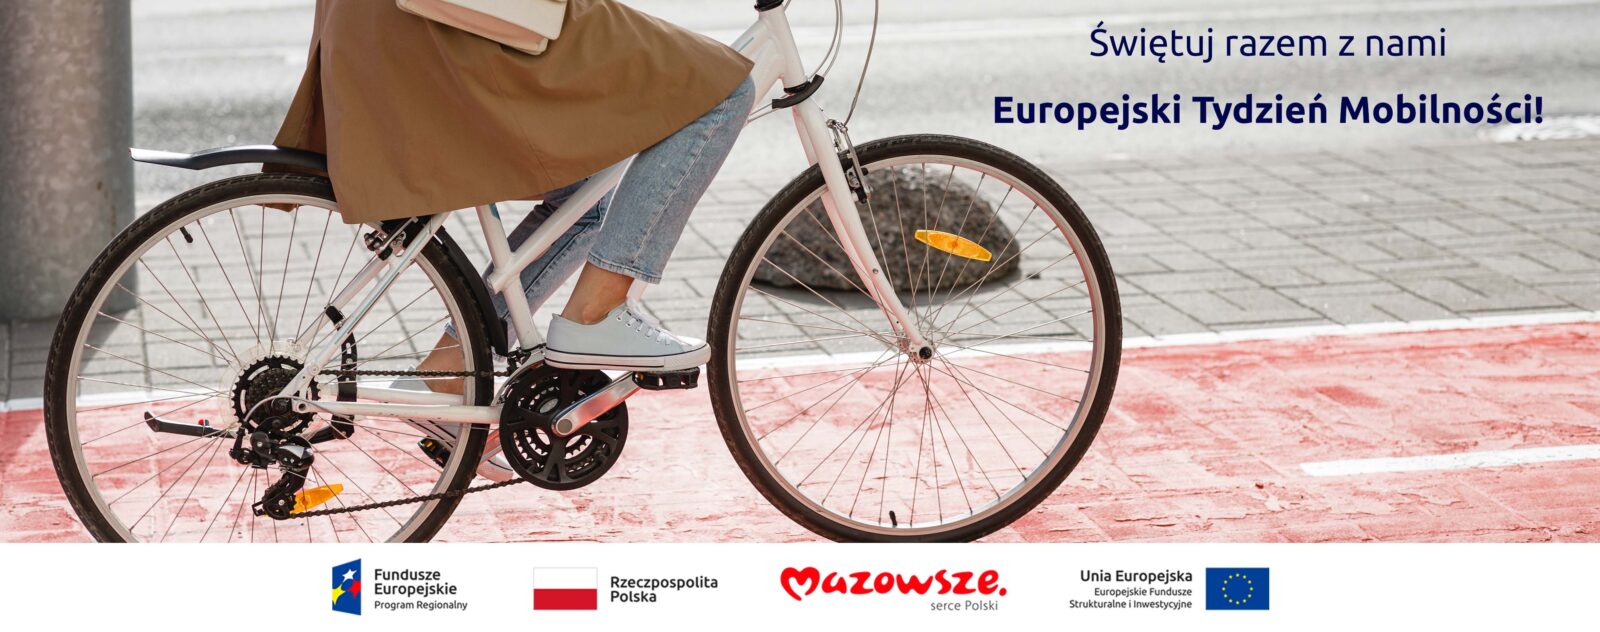 Grafika z hasłem: Świętuj razem z nami Europejski Tydzień Mobilności! Na zdjęciu kobieta podczas jazdy rowerem, w tle ścieżka rowerowa.